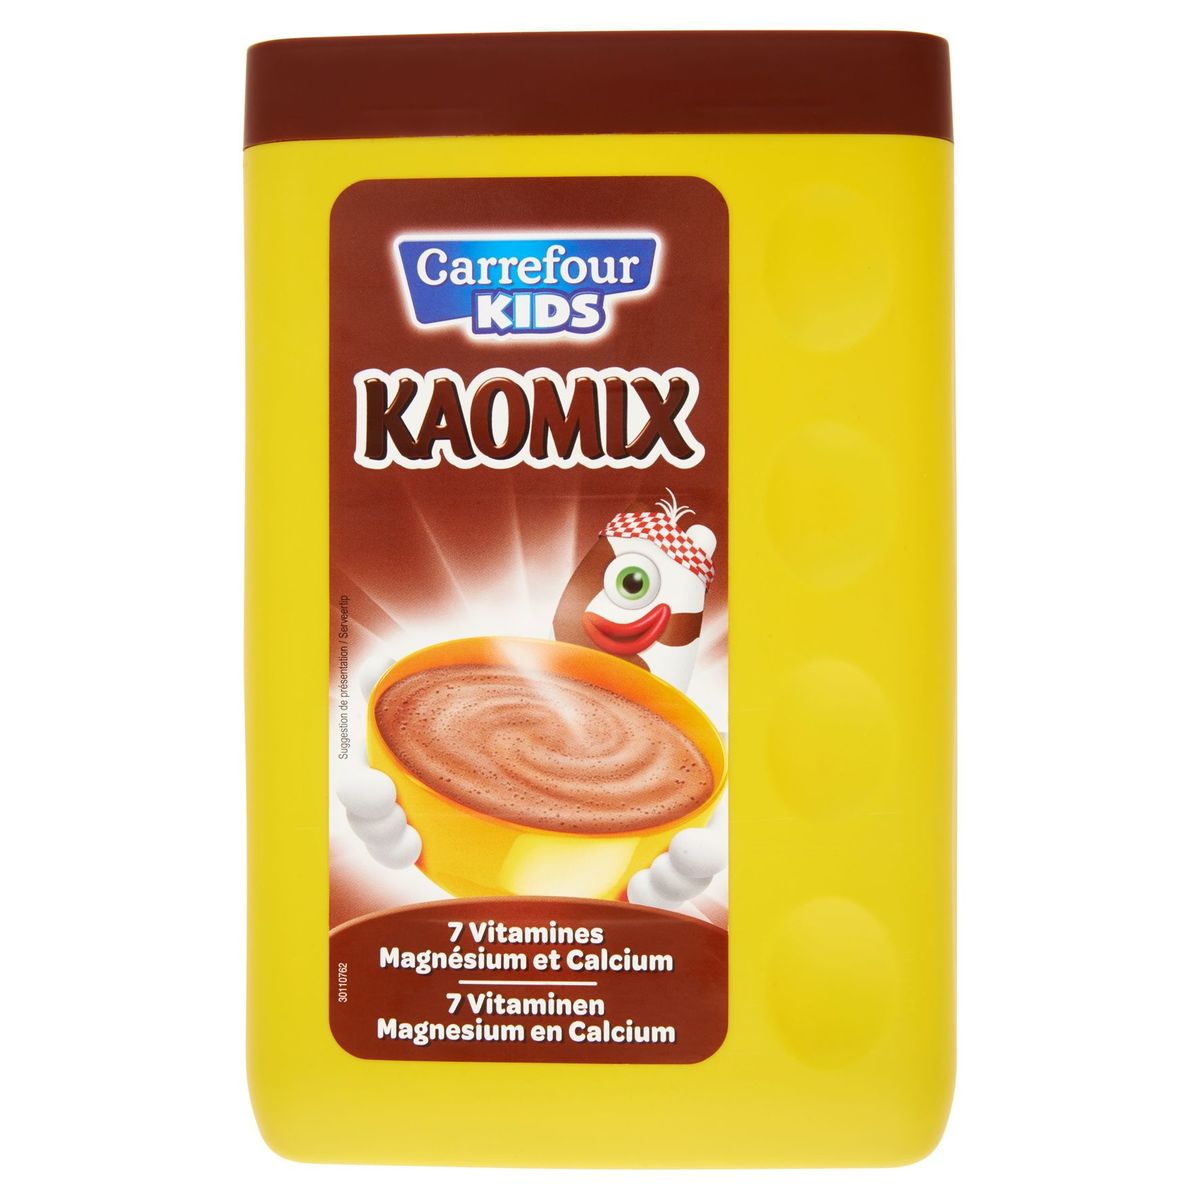 Carrefour Kids Kaomix 7 Vitaminen Magnesium en Calcium 1 kg